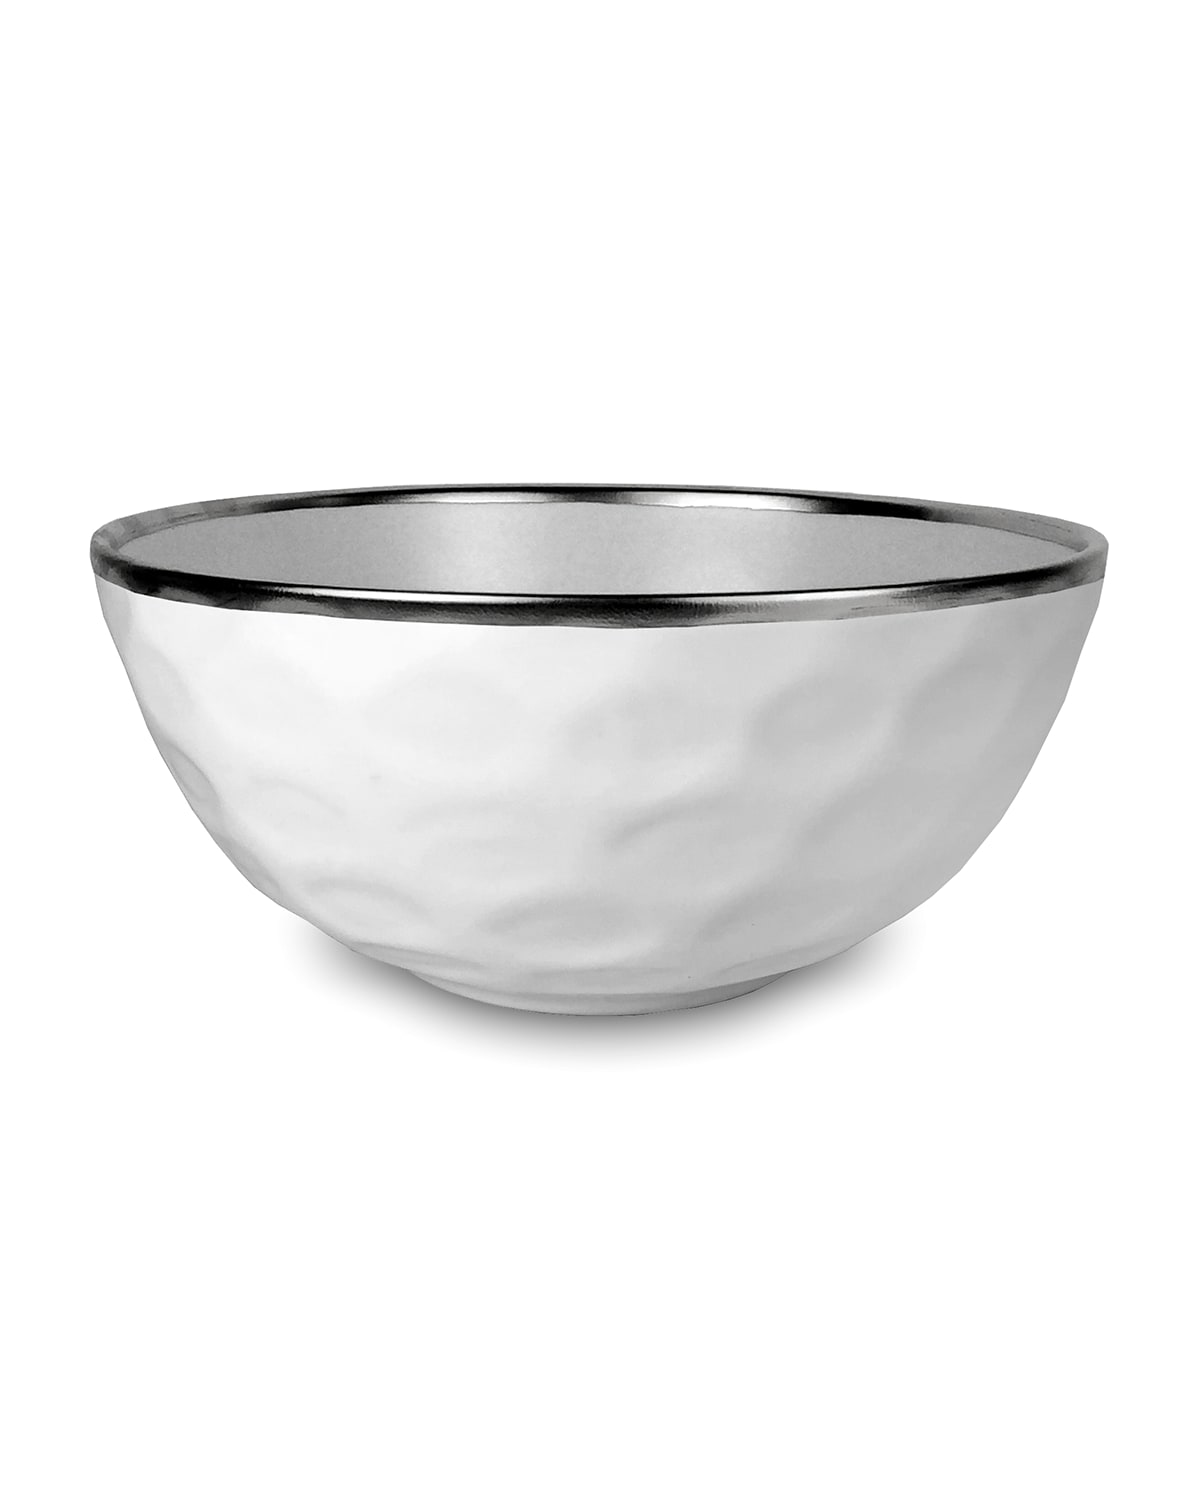 Michael Wainwright Truro Bowl In White/platinum